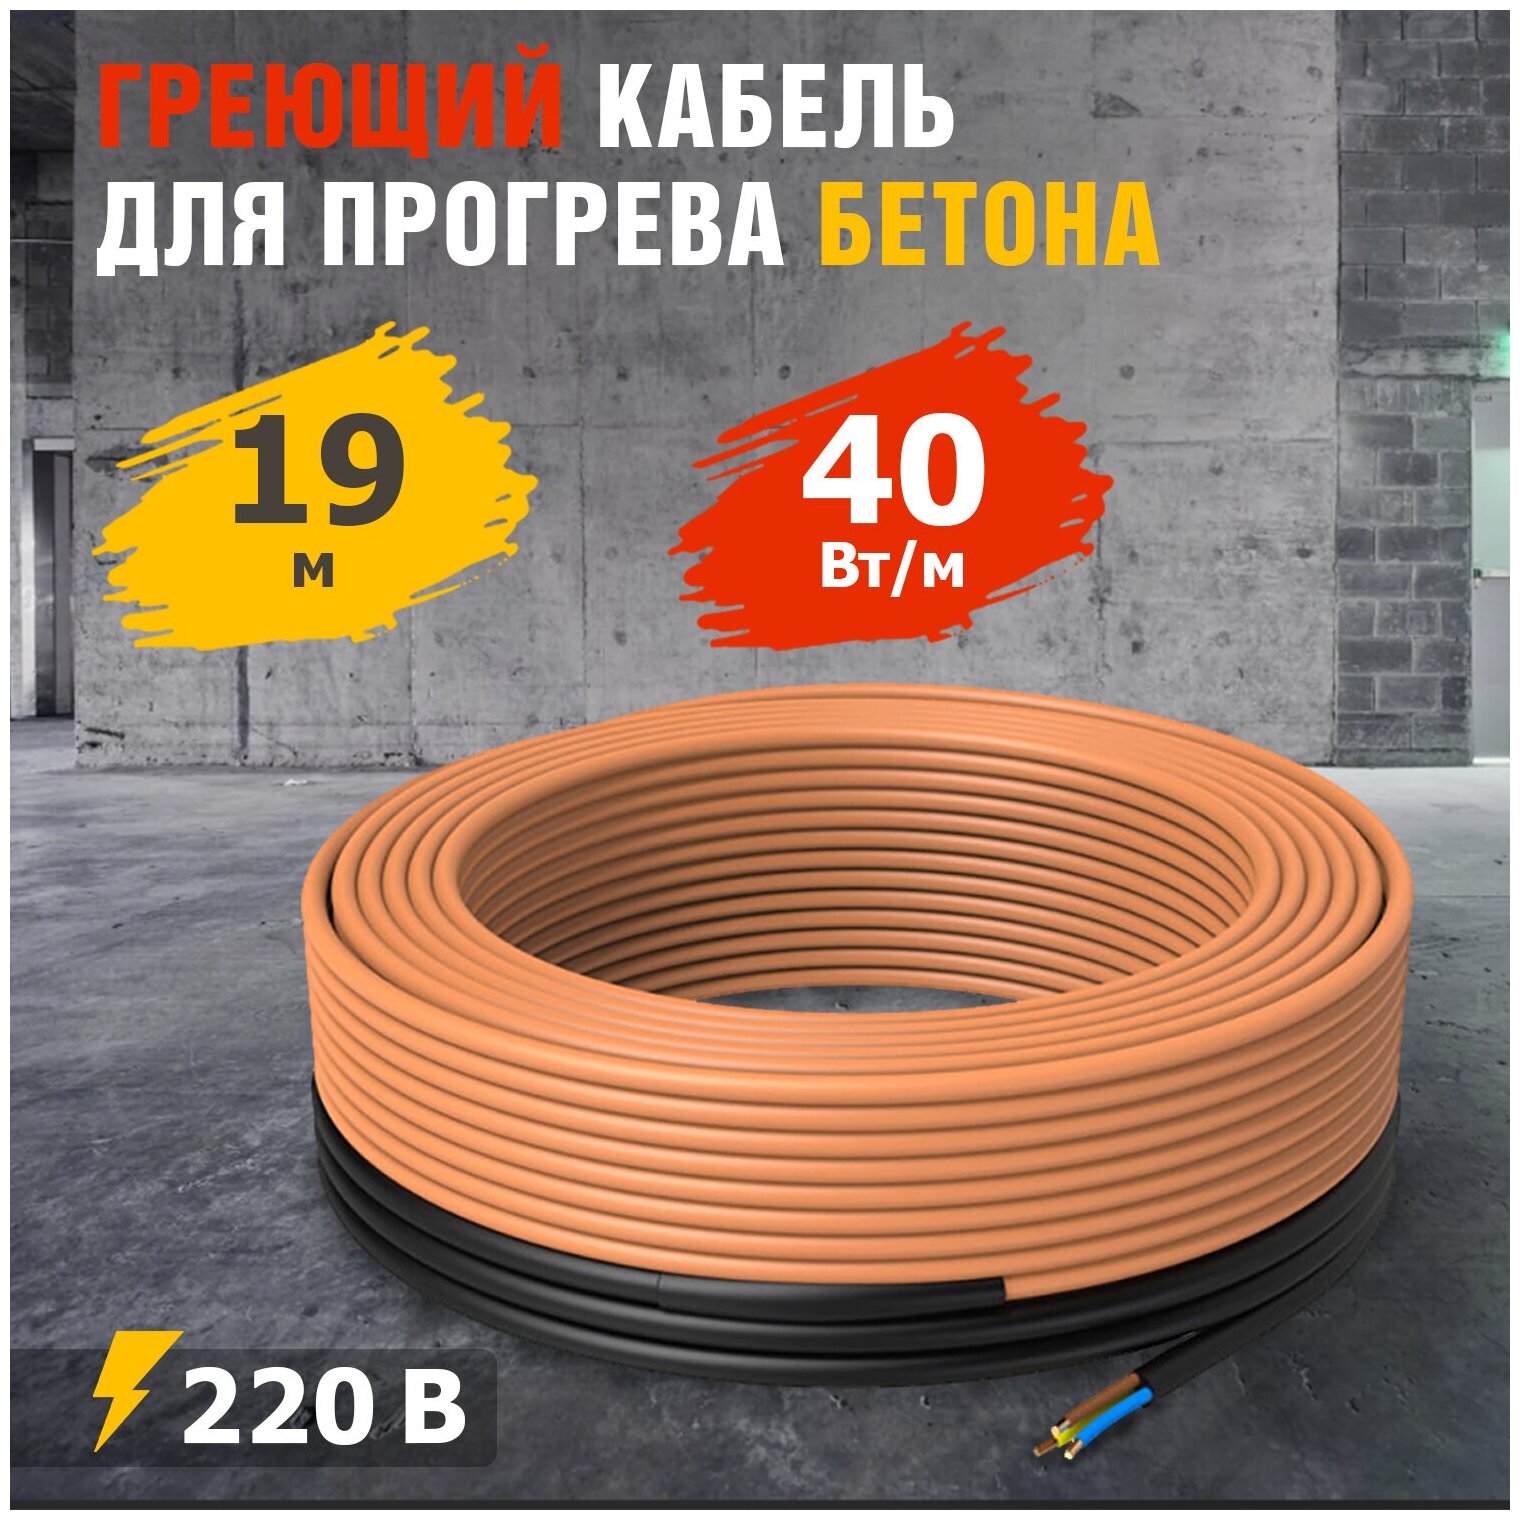 Греющий кабель для прогрева бетона кдбс 40 Вт/м 19 м REXANT